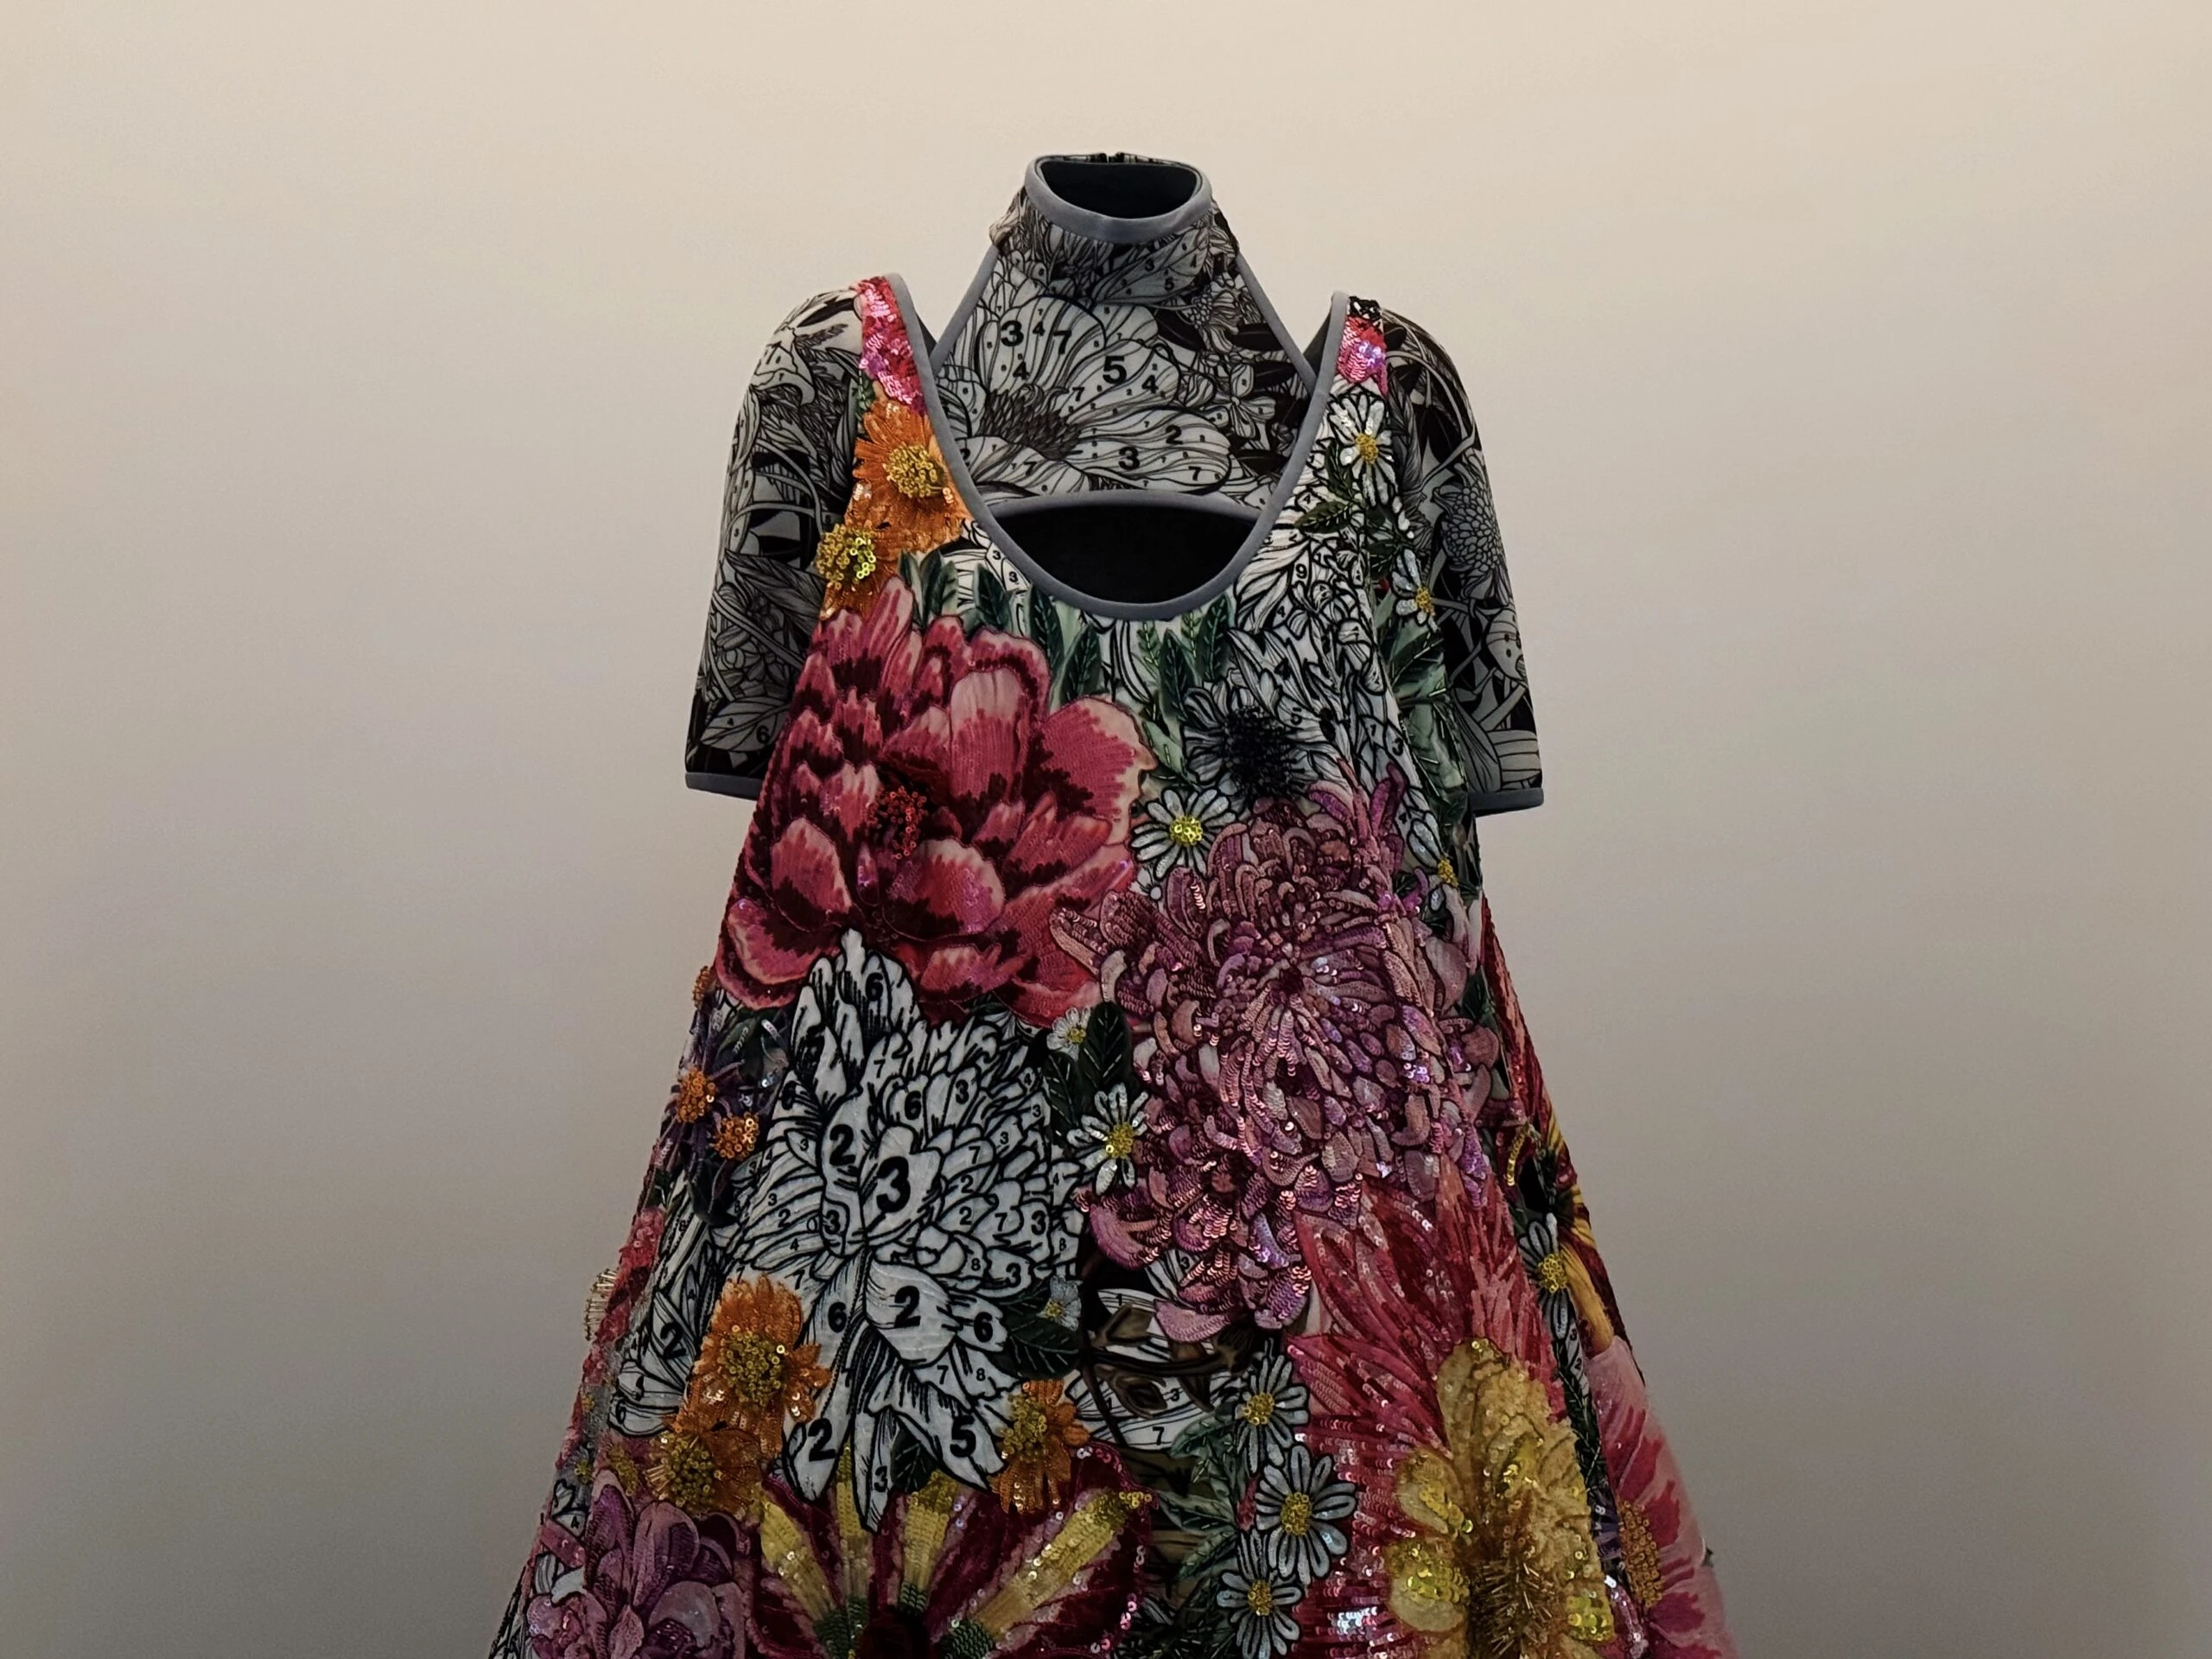 Diseño de Mary Katrantzou, vestido Digitales de la colección primavera verano 2018